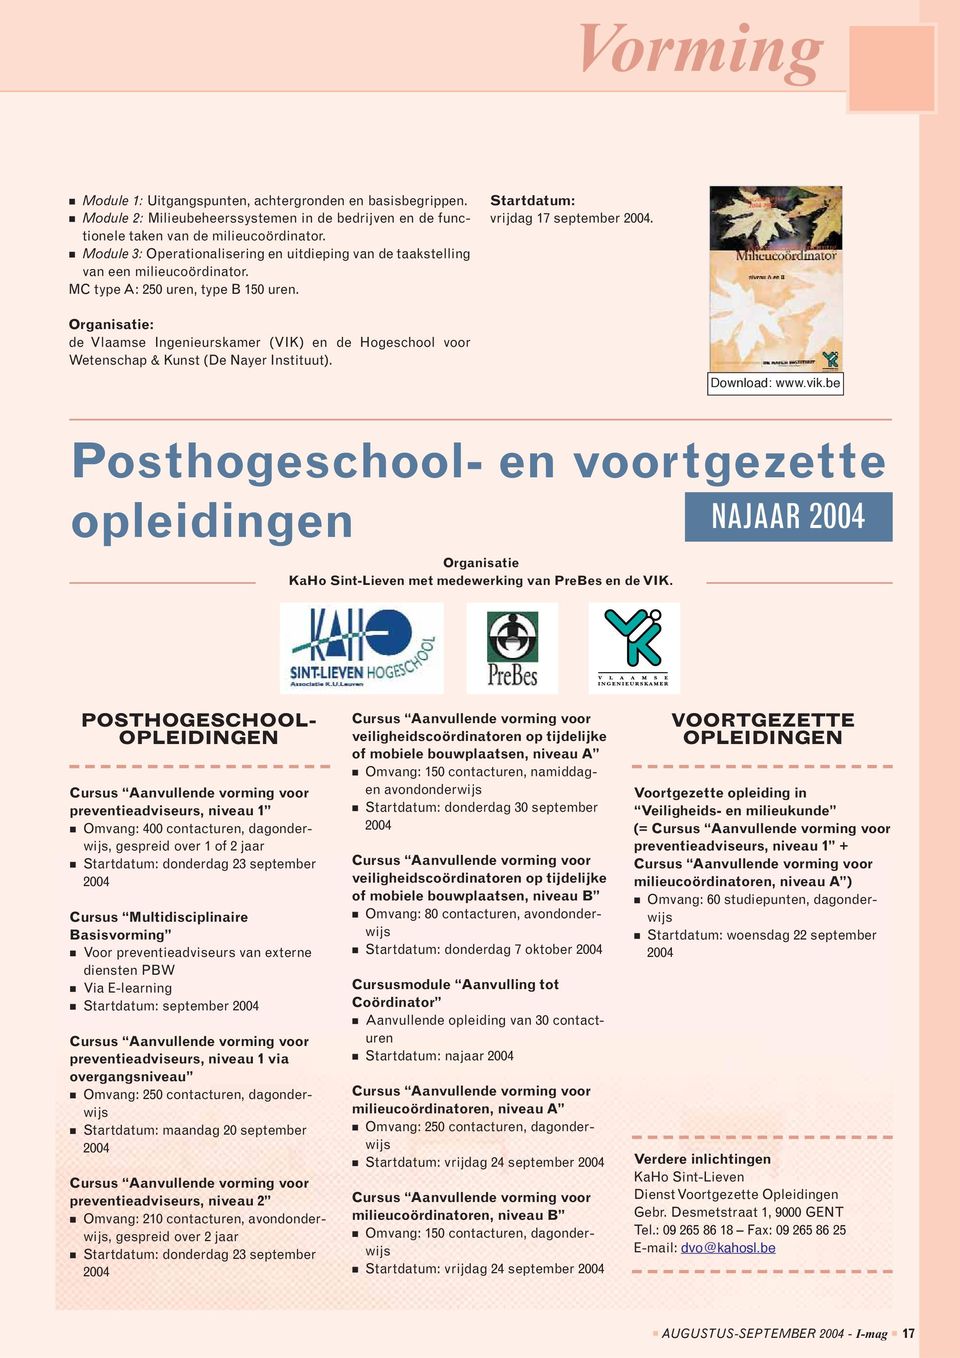 Organisatie: de Vlaamse Ingenieurskamer (VIK) en de Hogeschool voor Wetenschap & Kunst (De Nayer Instituut). Download: www.vik.